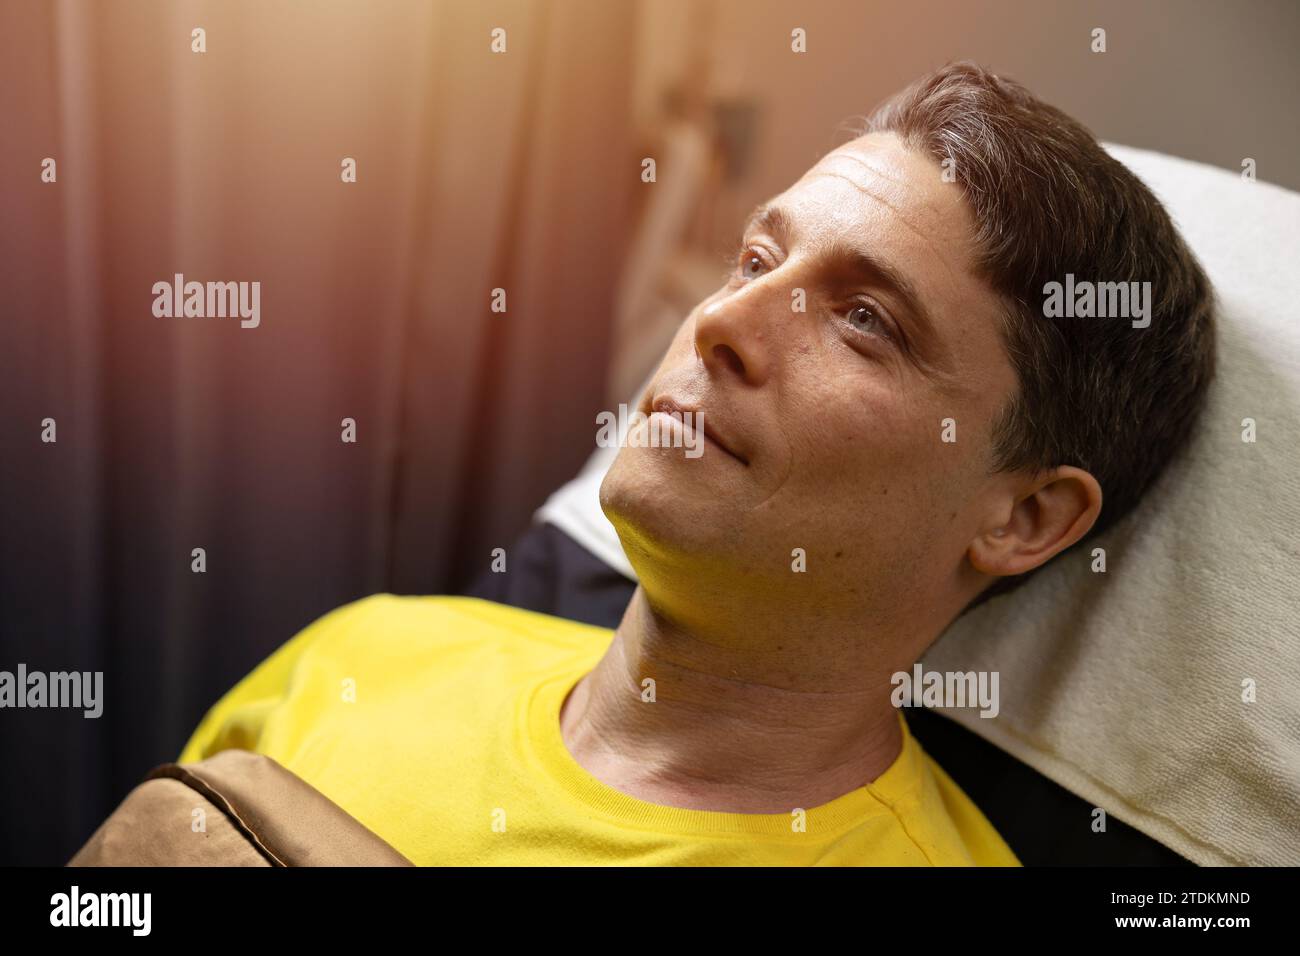 gros plan caucasien adulte mâle visage modèle beau pose sur le lit de clinique cosmétique relax sourire en attente de la procédure de traitement du visage Banque D'Images